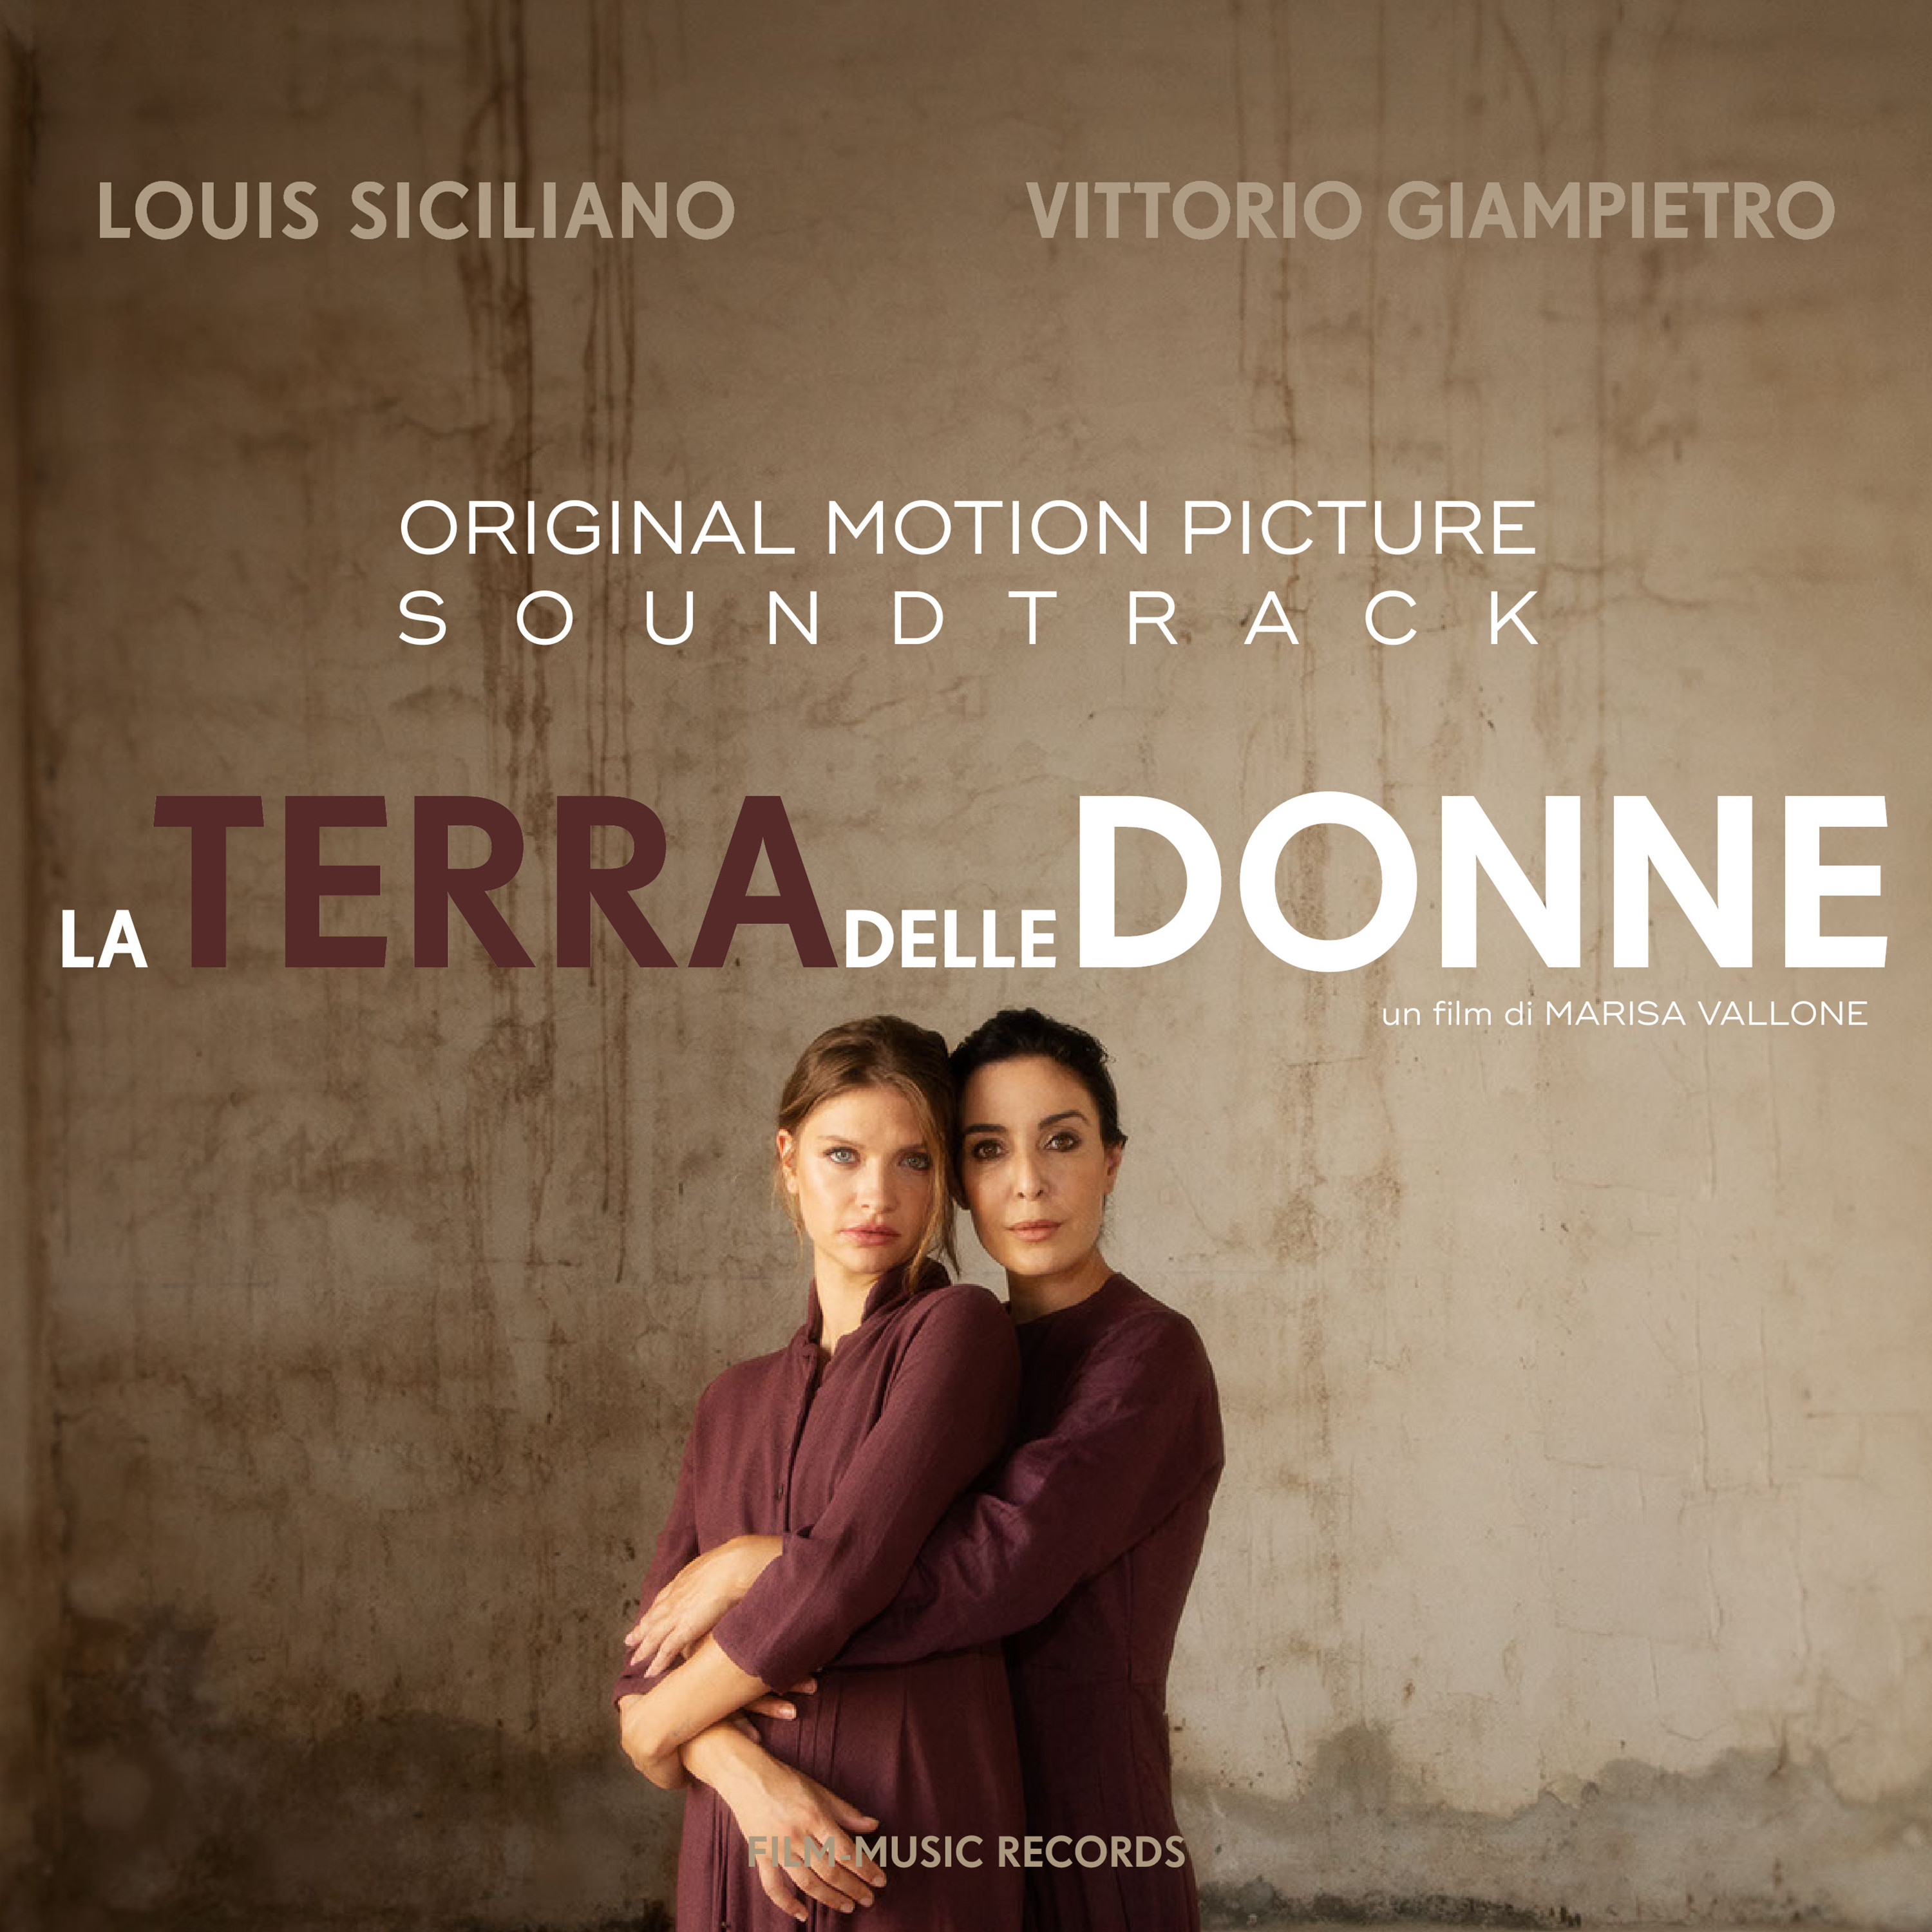 The soundtrack album LA TERRA DELLE DONNE by Louis Siciliano and Vittorio Giampietro will be released on June 3, 2023